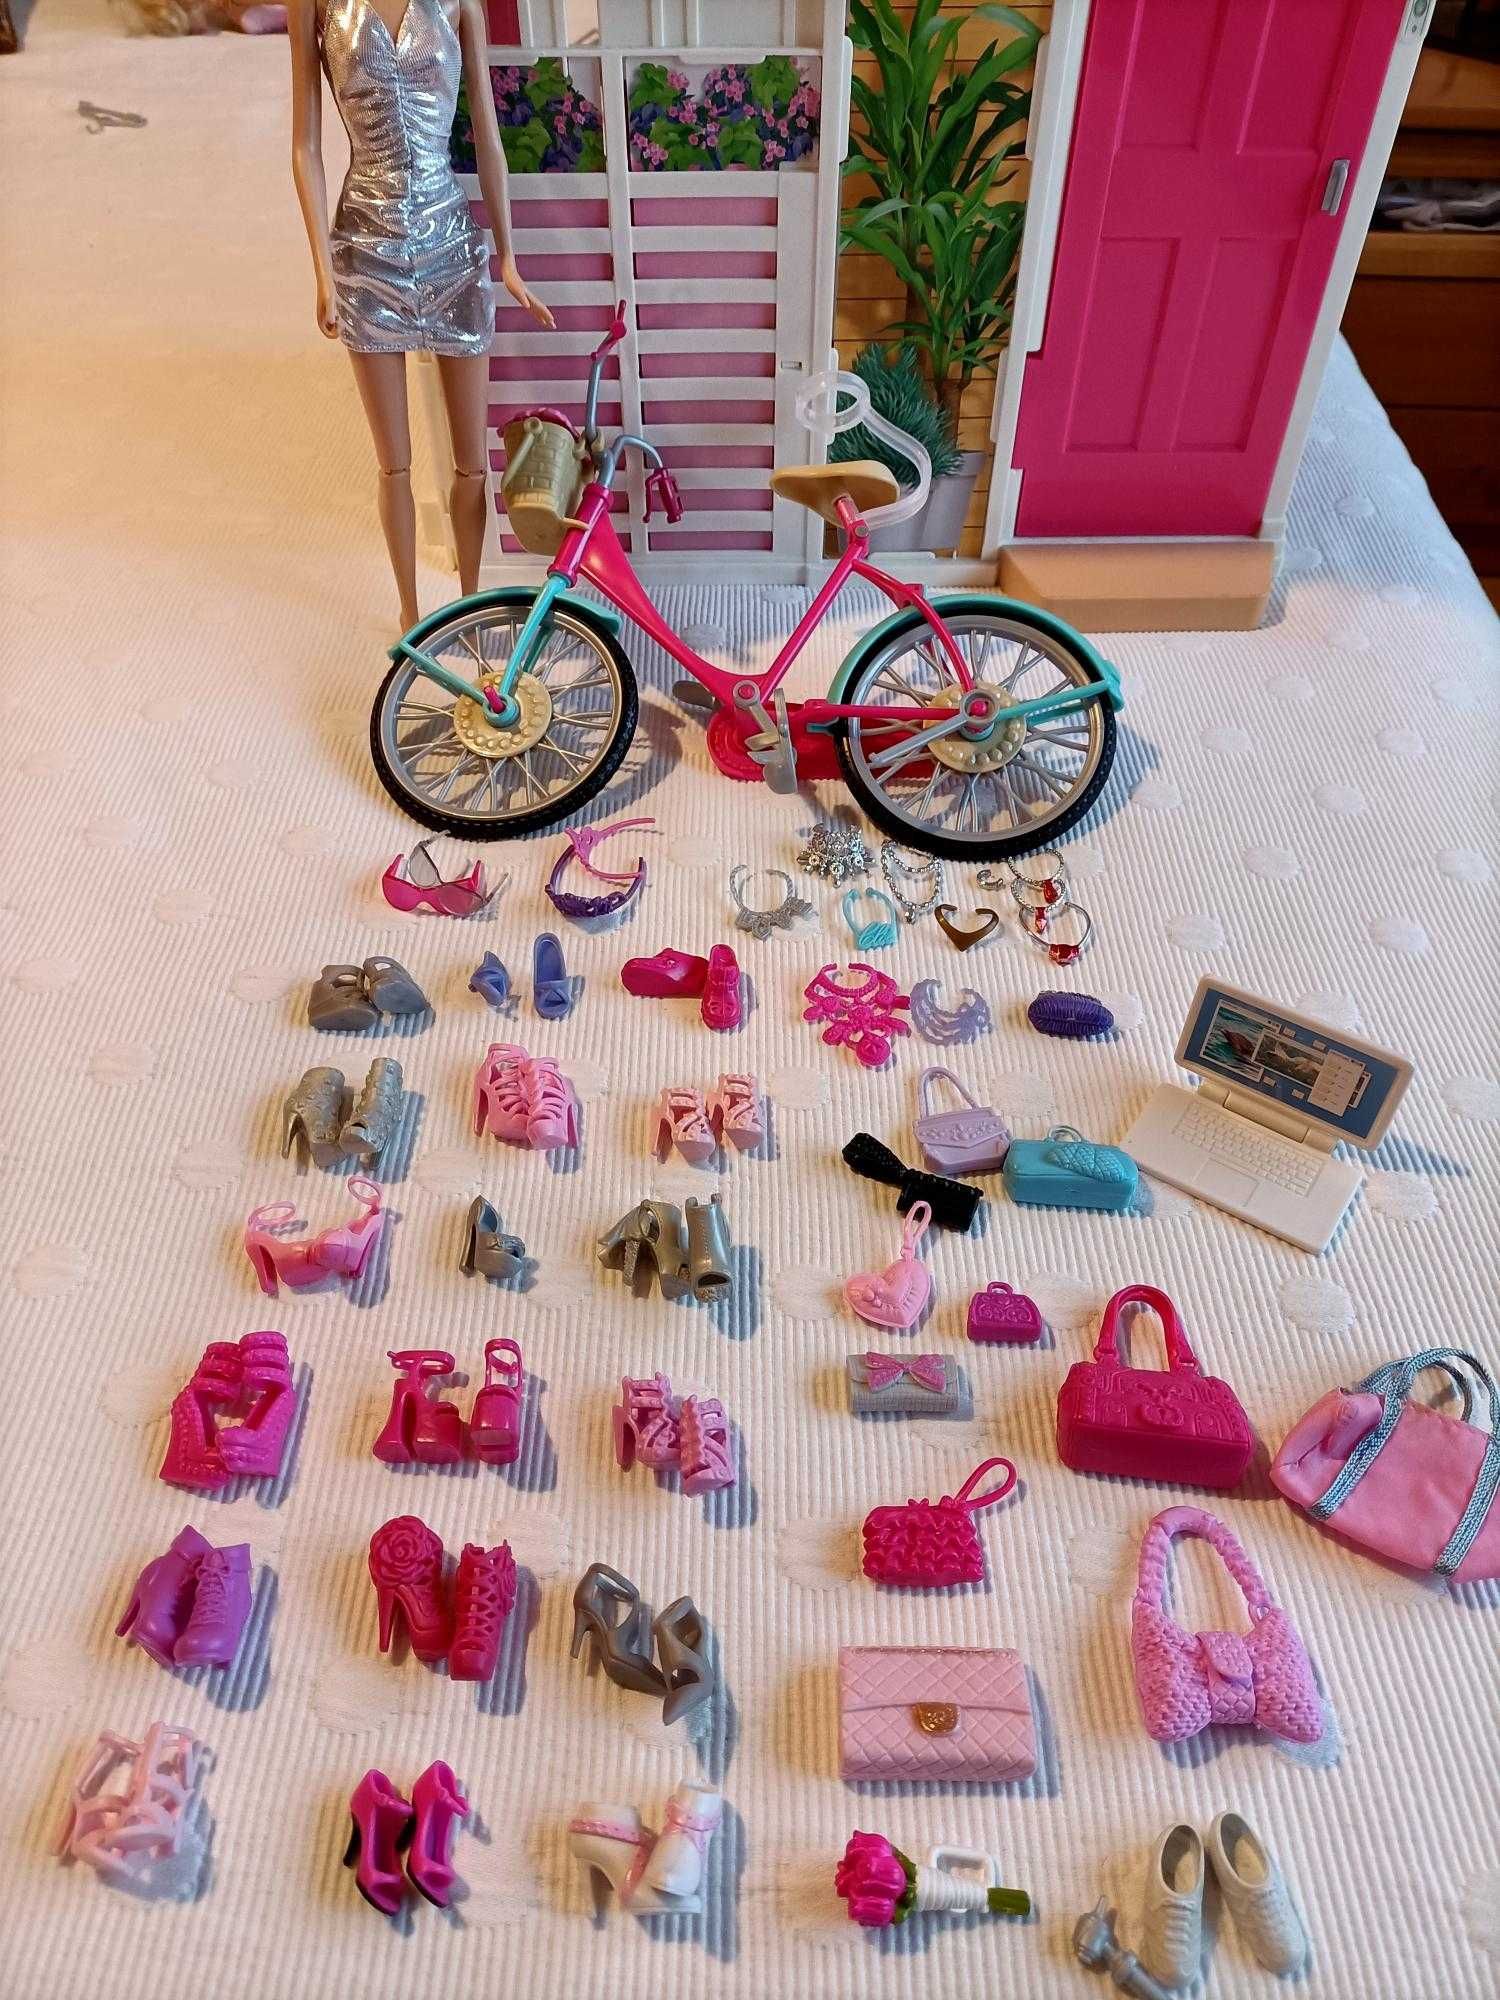 Barbie e a Dream House